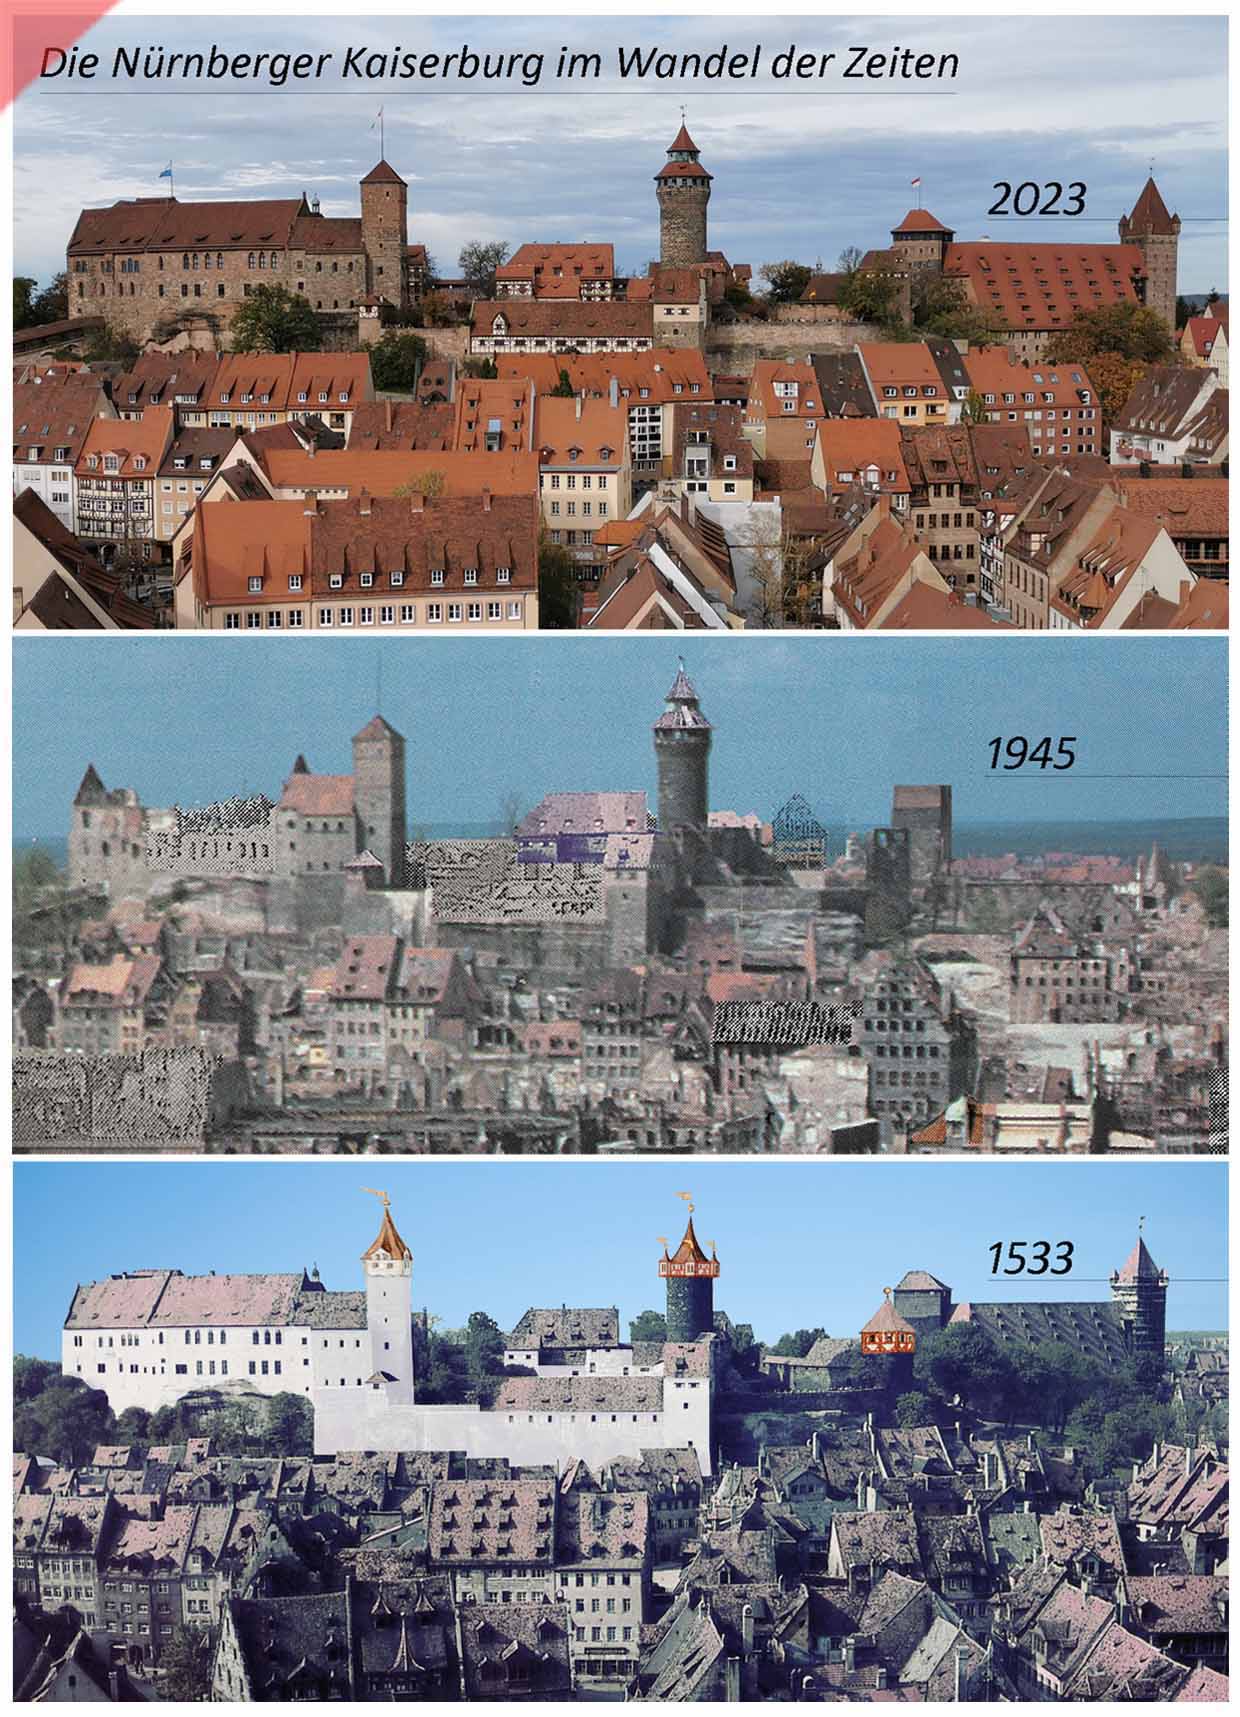 Kaiserburg-Burg-Nuernberg-Baugeschichte-2022-1945-1533-Damals-farbig-1945-Jetzt-Vergleich-gekalkte-Mauern-Sinvellturm-Heidenturm